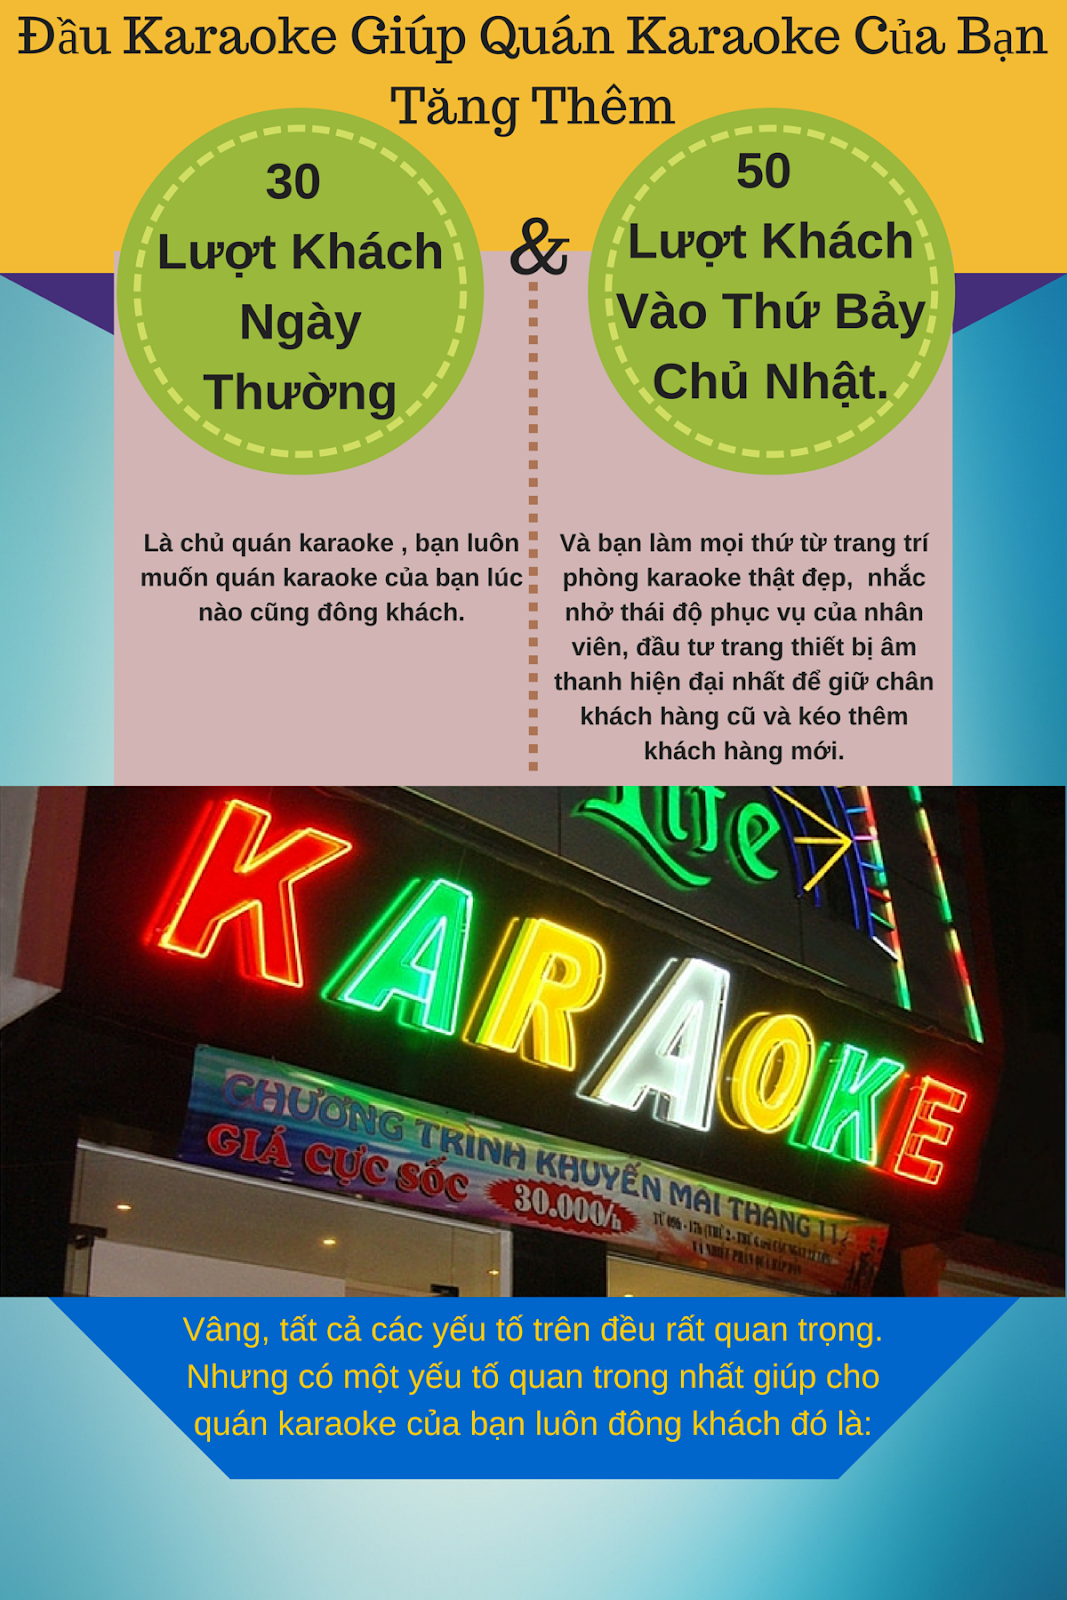 Đầu karaoke Arirang Smartk - Giúp bạn kéo lượng khách khủng cho quán karaoke của mình - 1